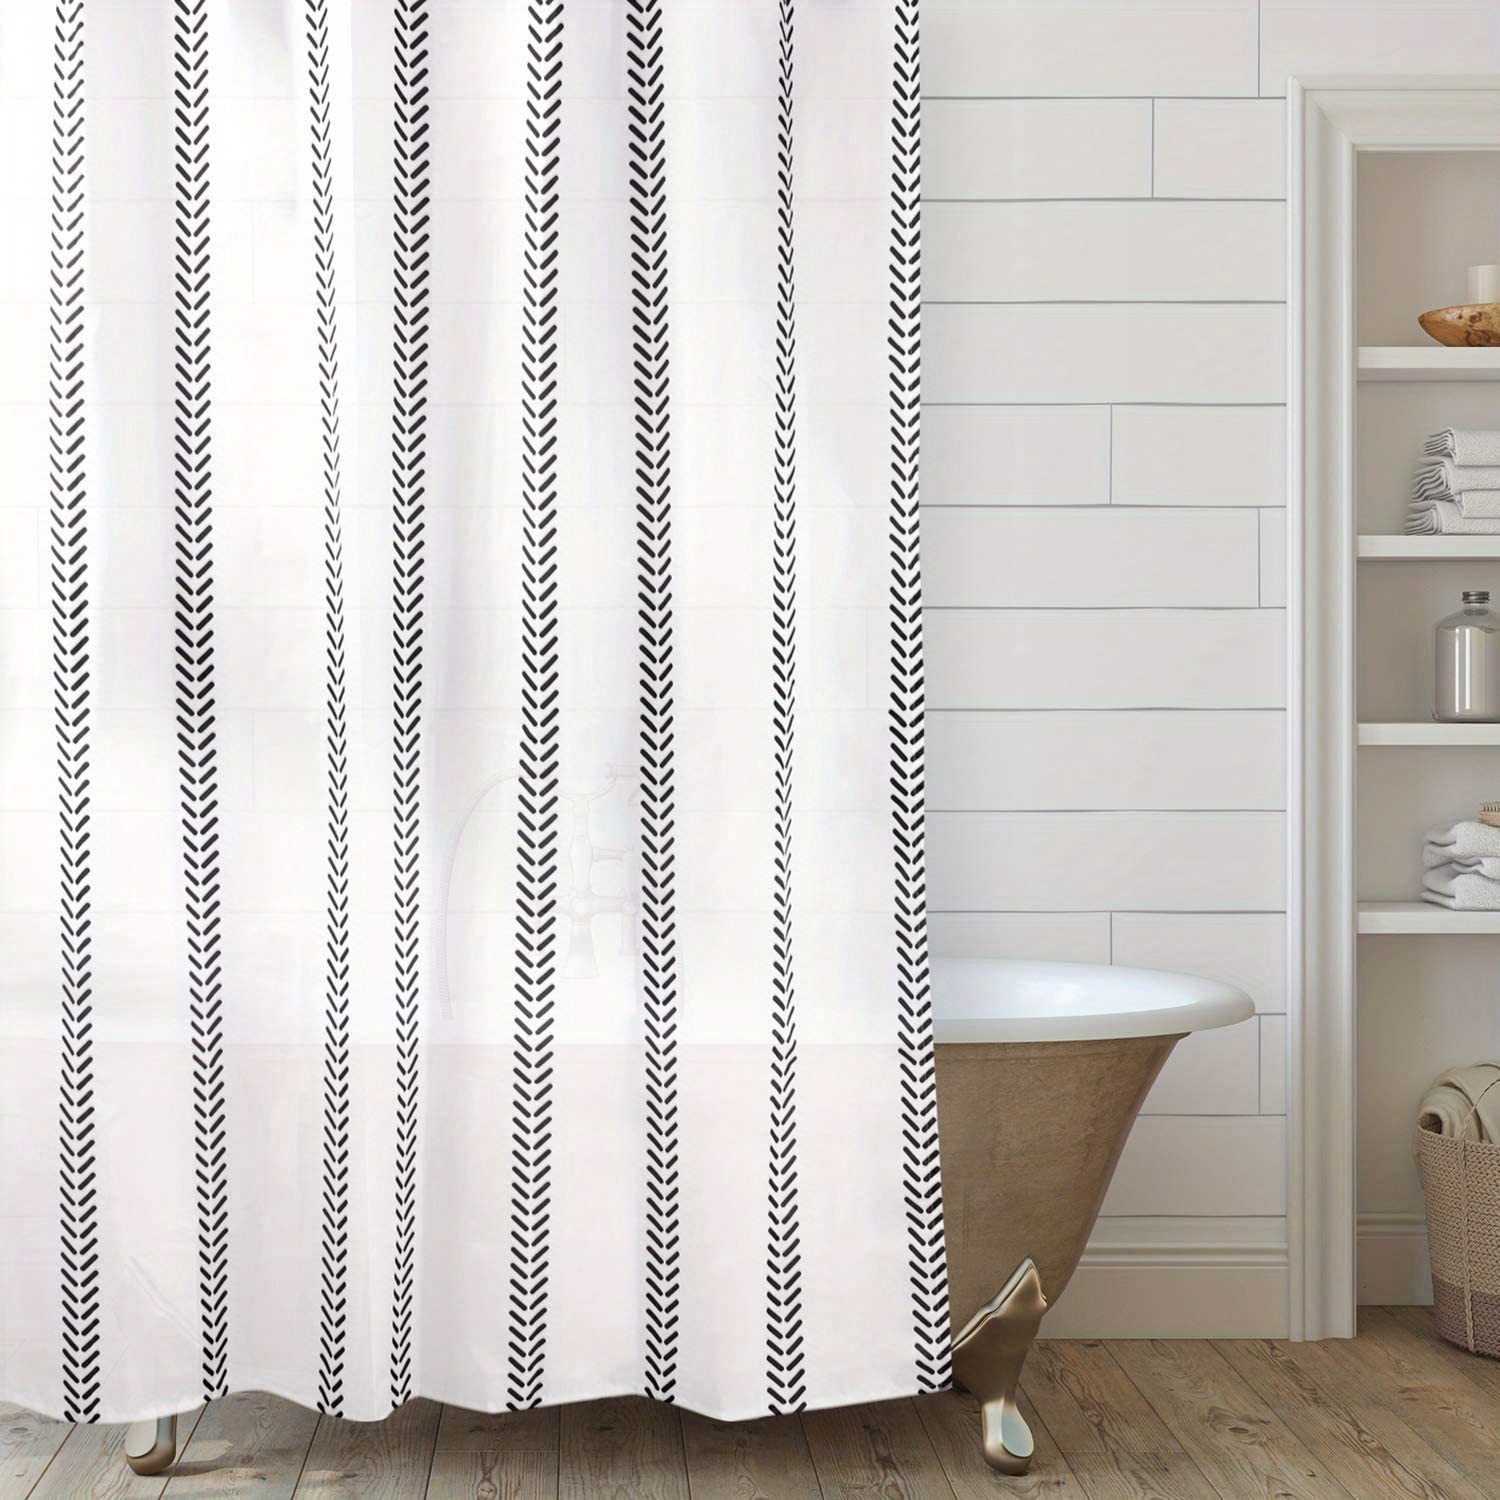 Cortina de ducha de encaje blanco con cenefa de fijación, elegante cortina  de ducha transparente para baño, cortina de ducha vintage estilo bohemio